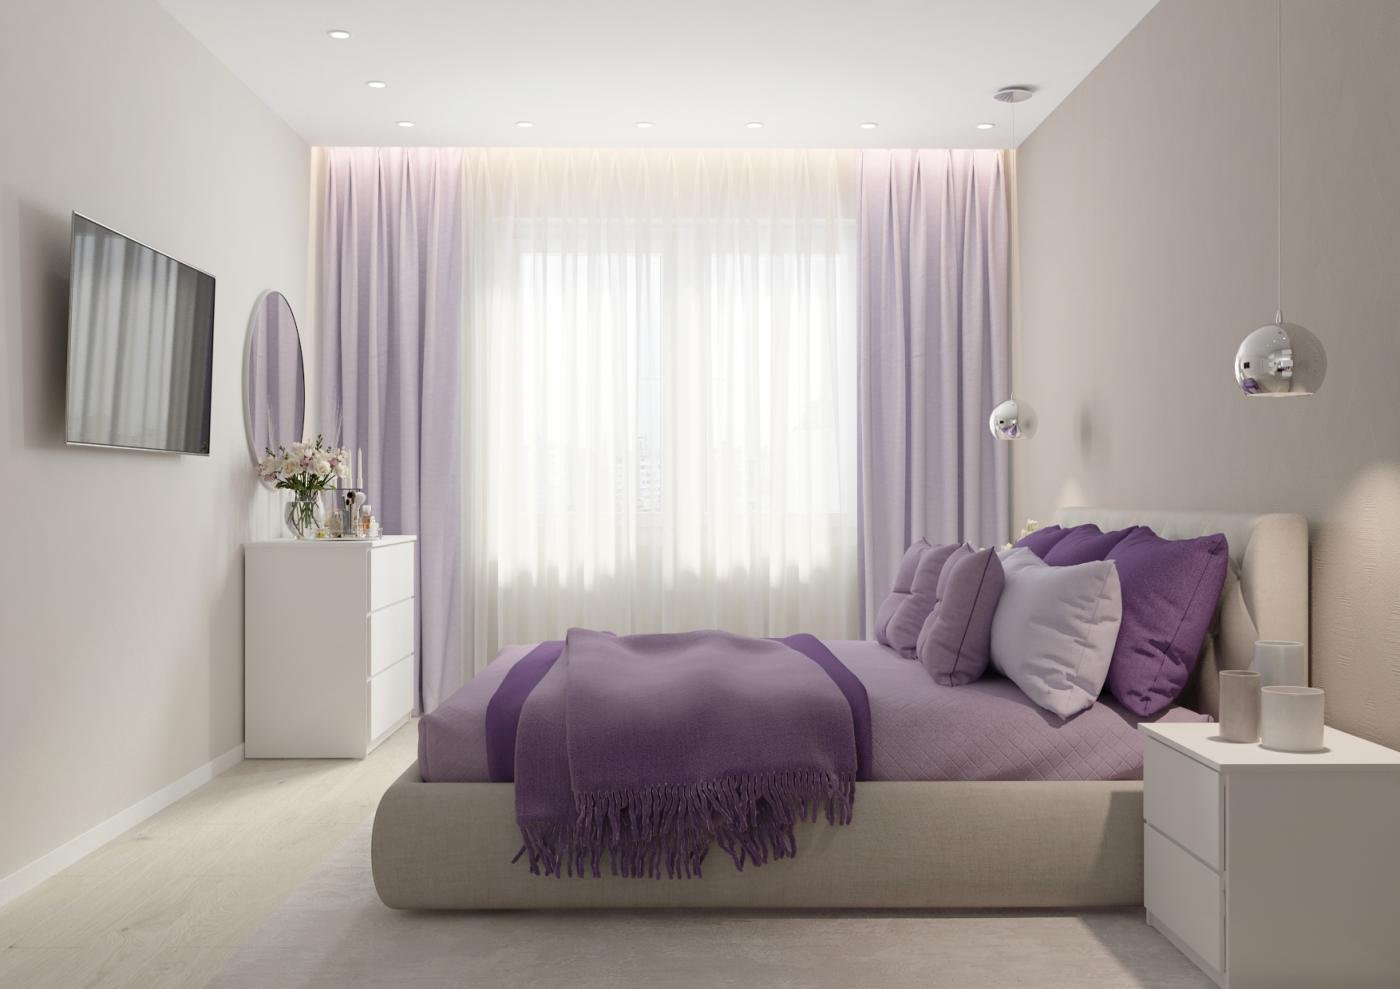 Фиолетовые шторы в интерьере: фото реальных проектов. шторы фиолетовой гаммы в кухню, спальню, детскую, гостиную, прихожую